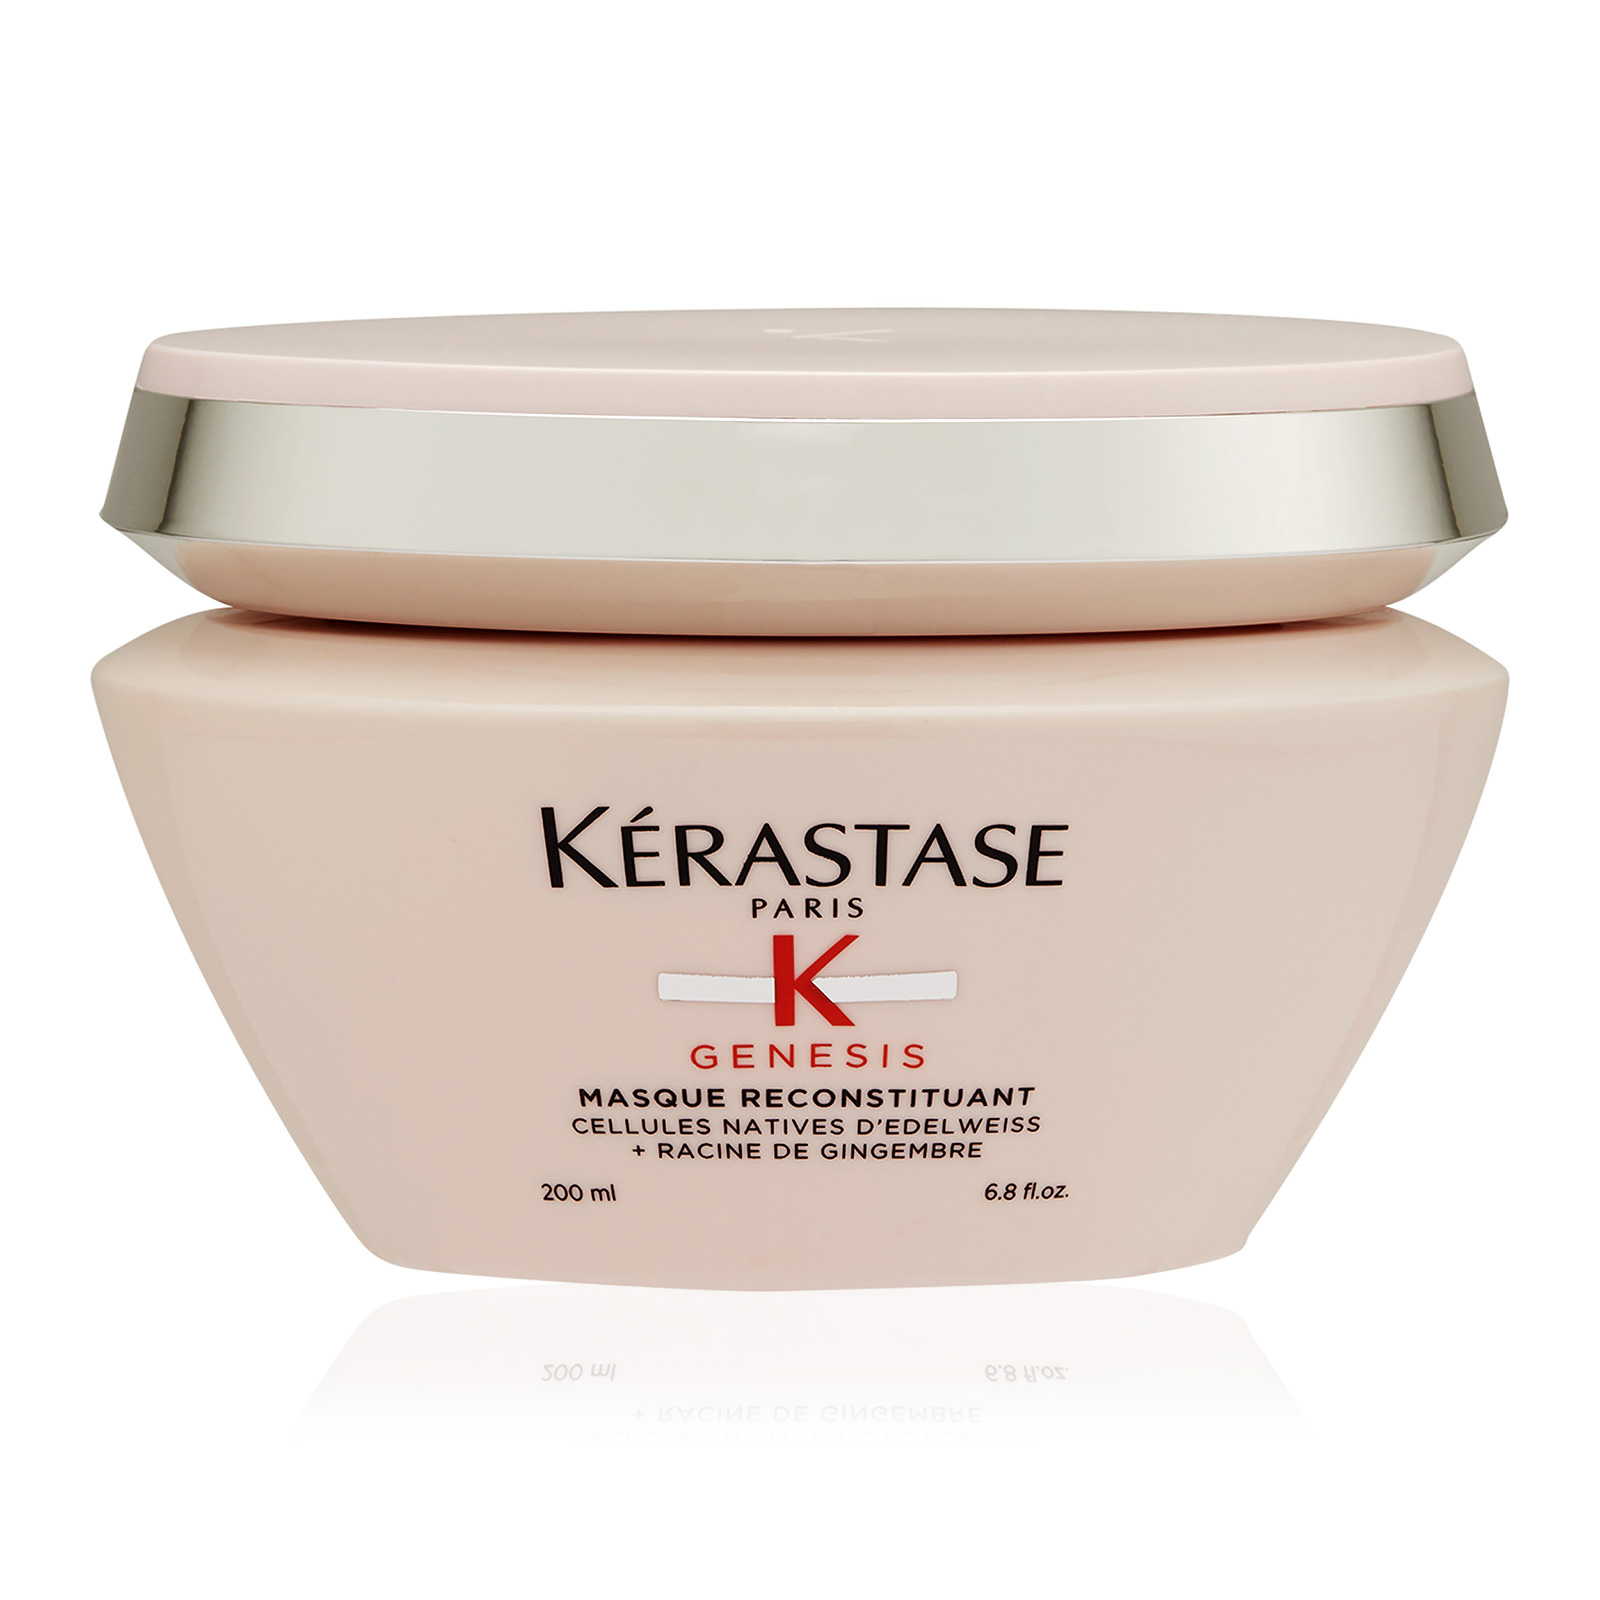 Kérastase Paris Kerastase Genesis Reconstituant Anti Hair-Fall Intense Fortifying Masque200 ml 6.8 oz AKB Beauty